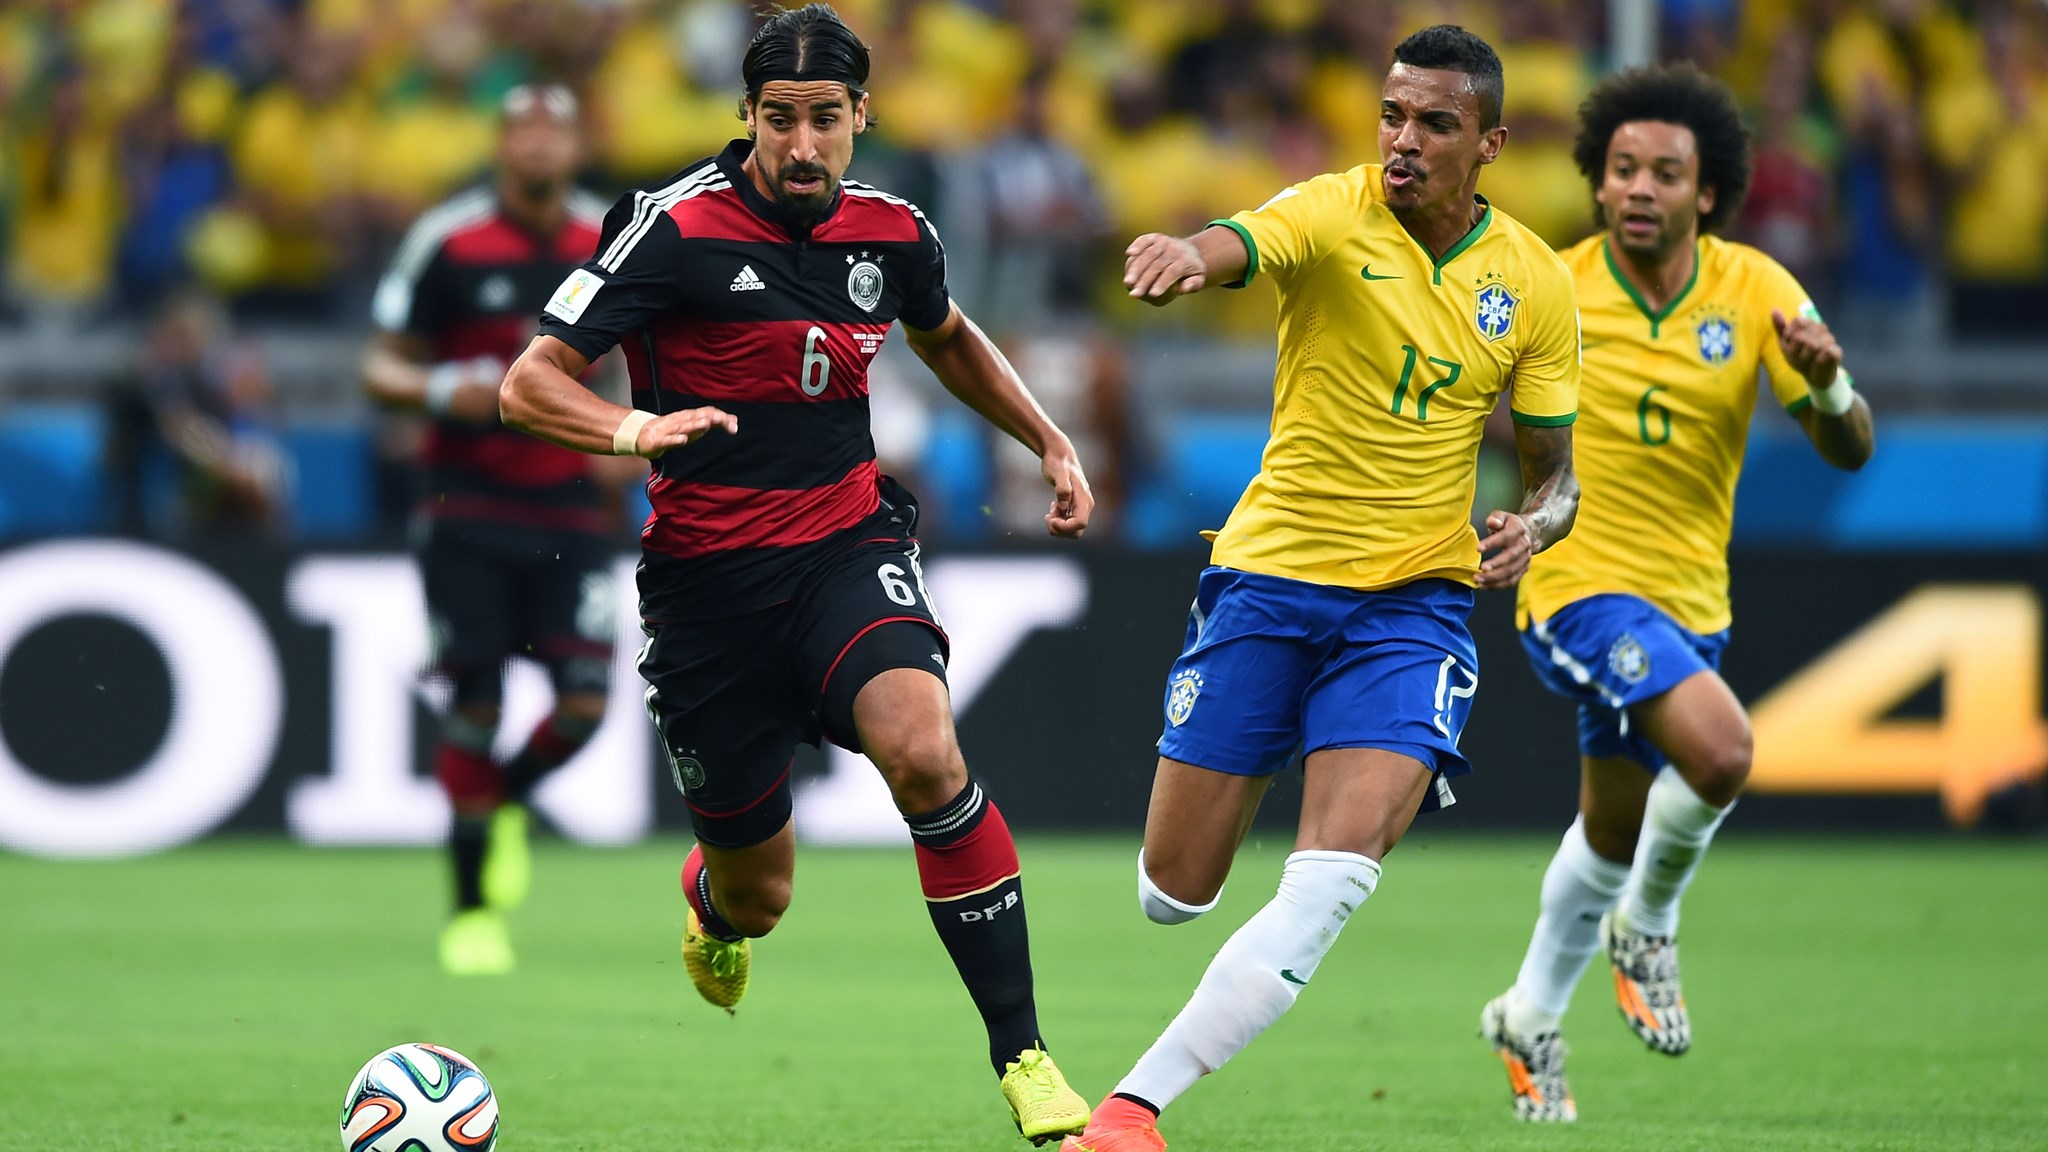 Германия 1 июля. ЧМ 2014 Германия Бразилия 7:1. Бразилия Германия 2014. Германия Бразилия 2014 полуфинал. Футбольный матч Бразилия - Германия фото 2014.